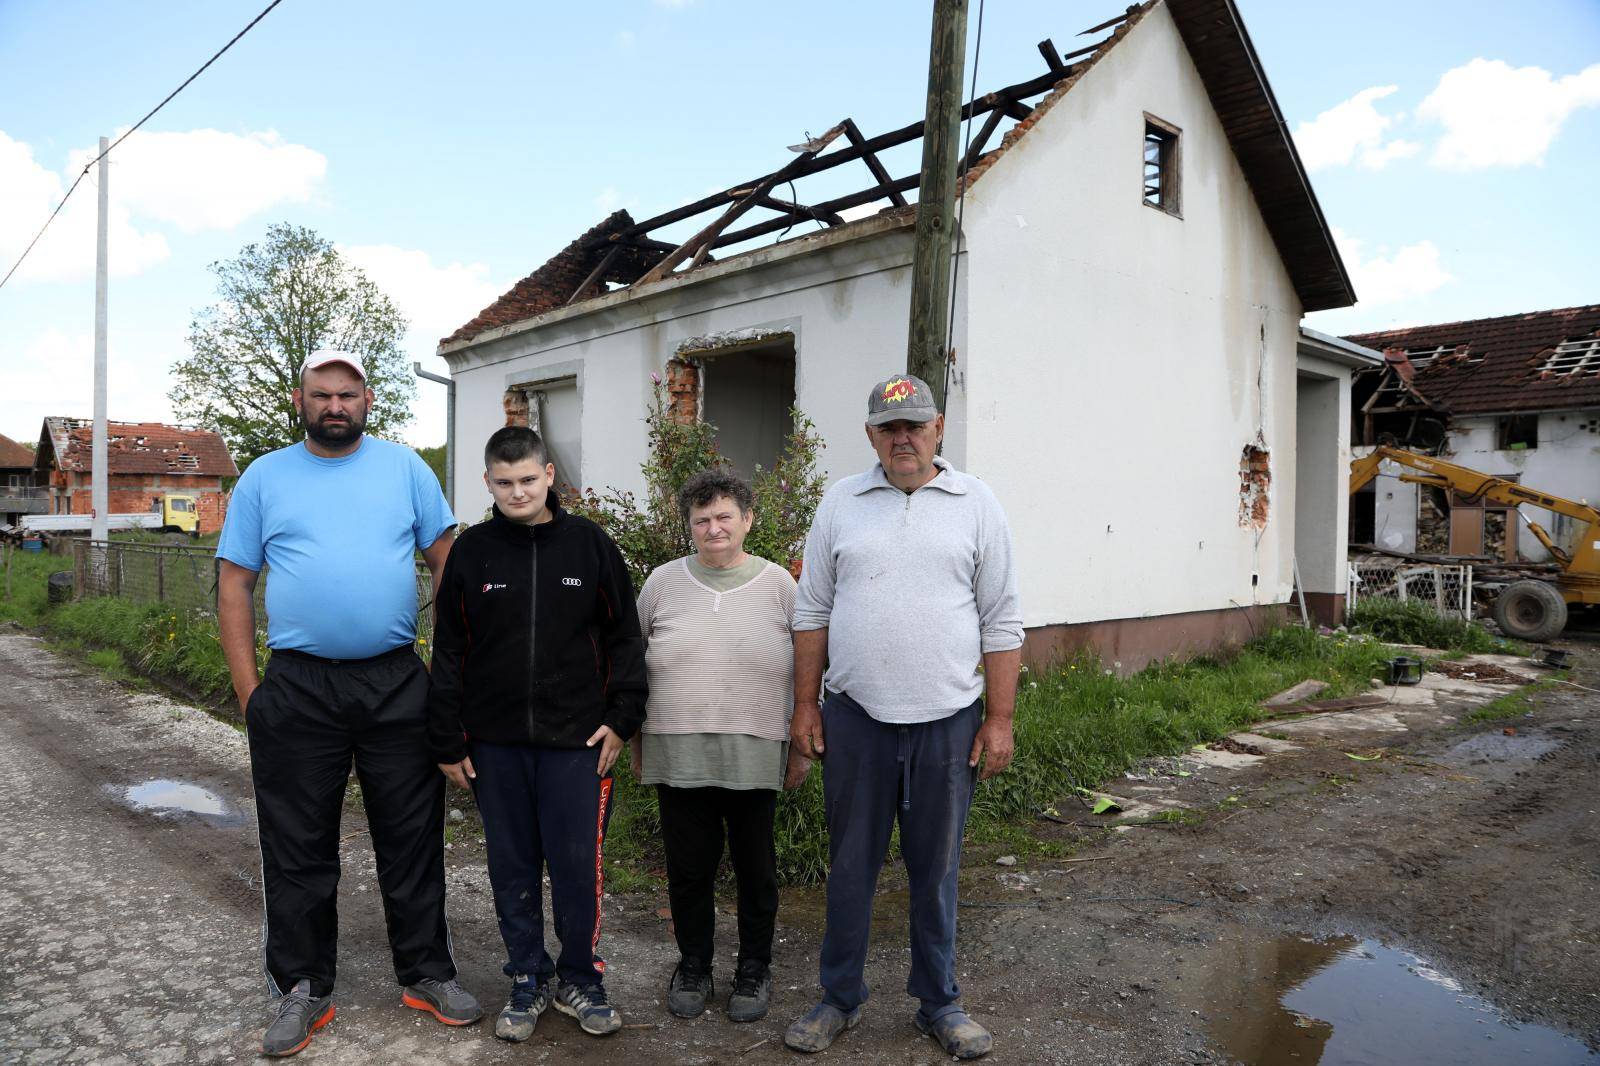 Obitelj Bakić dobiva novu kuću: 'Teško je živjeti u kontejneru'